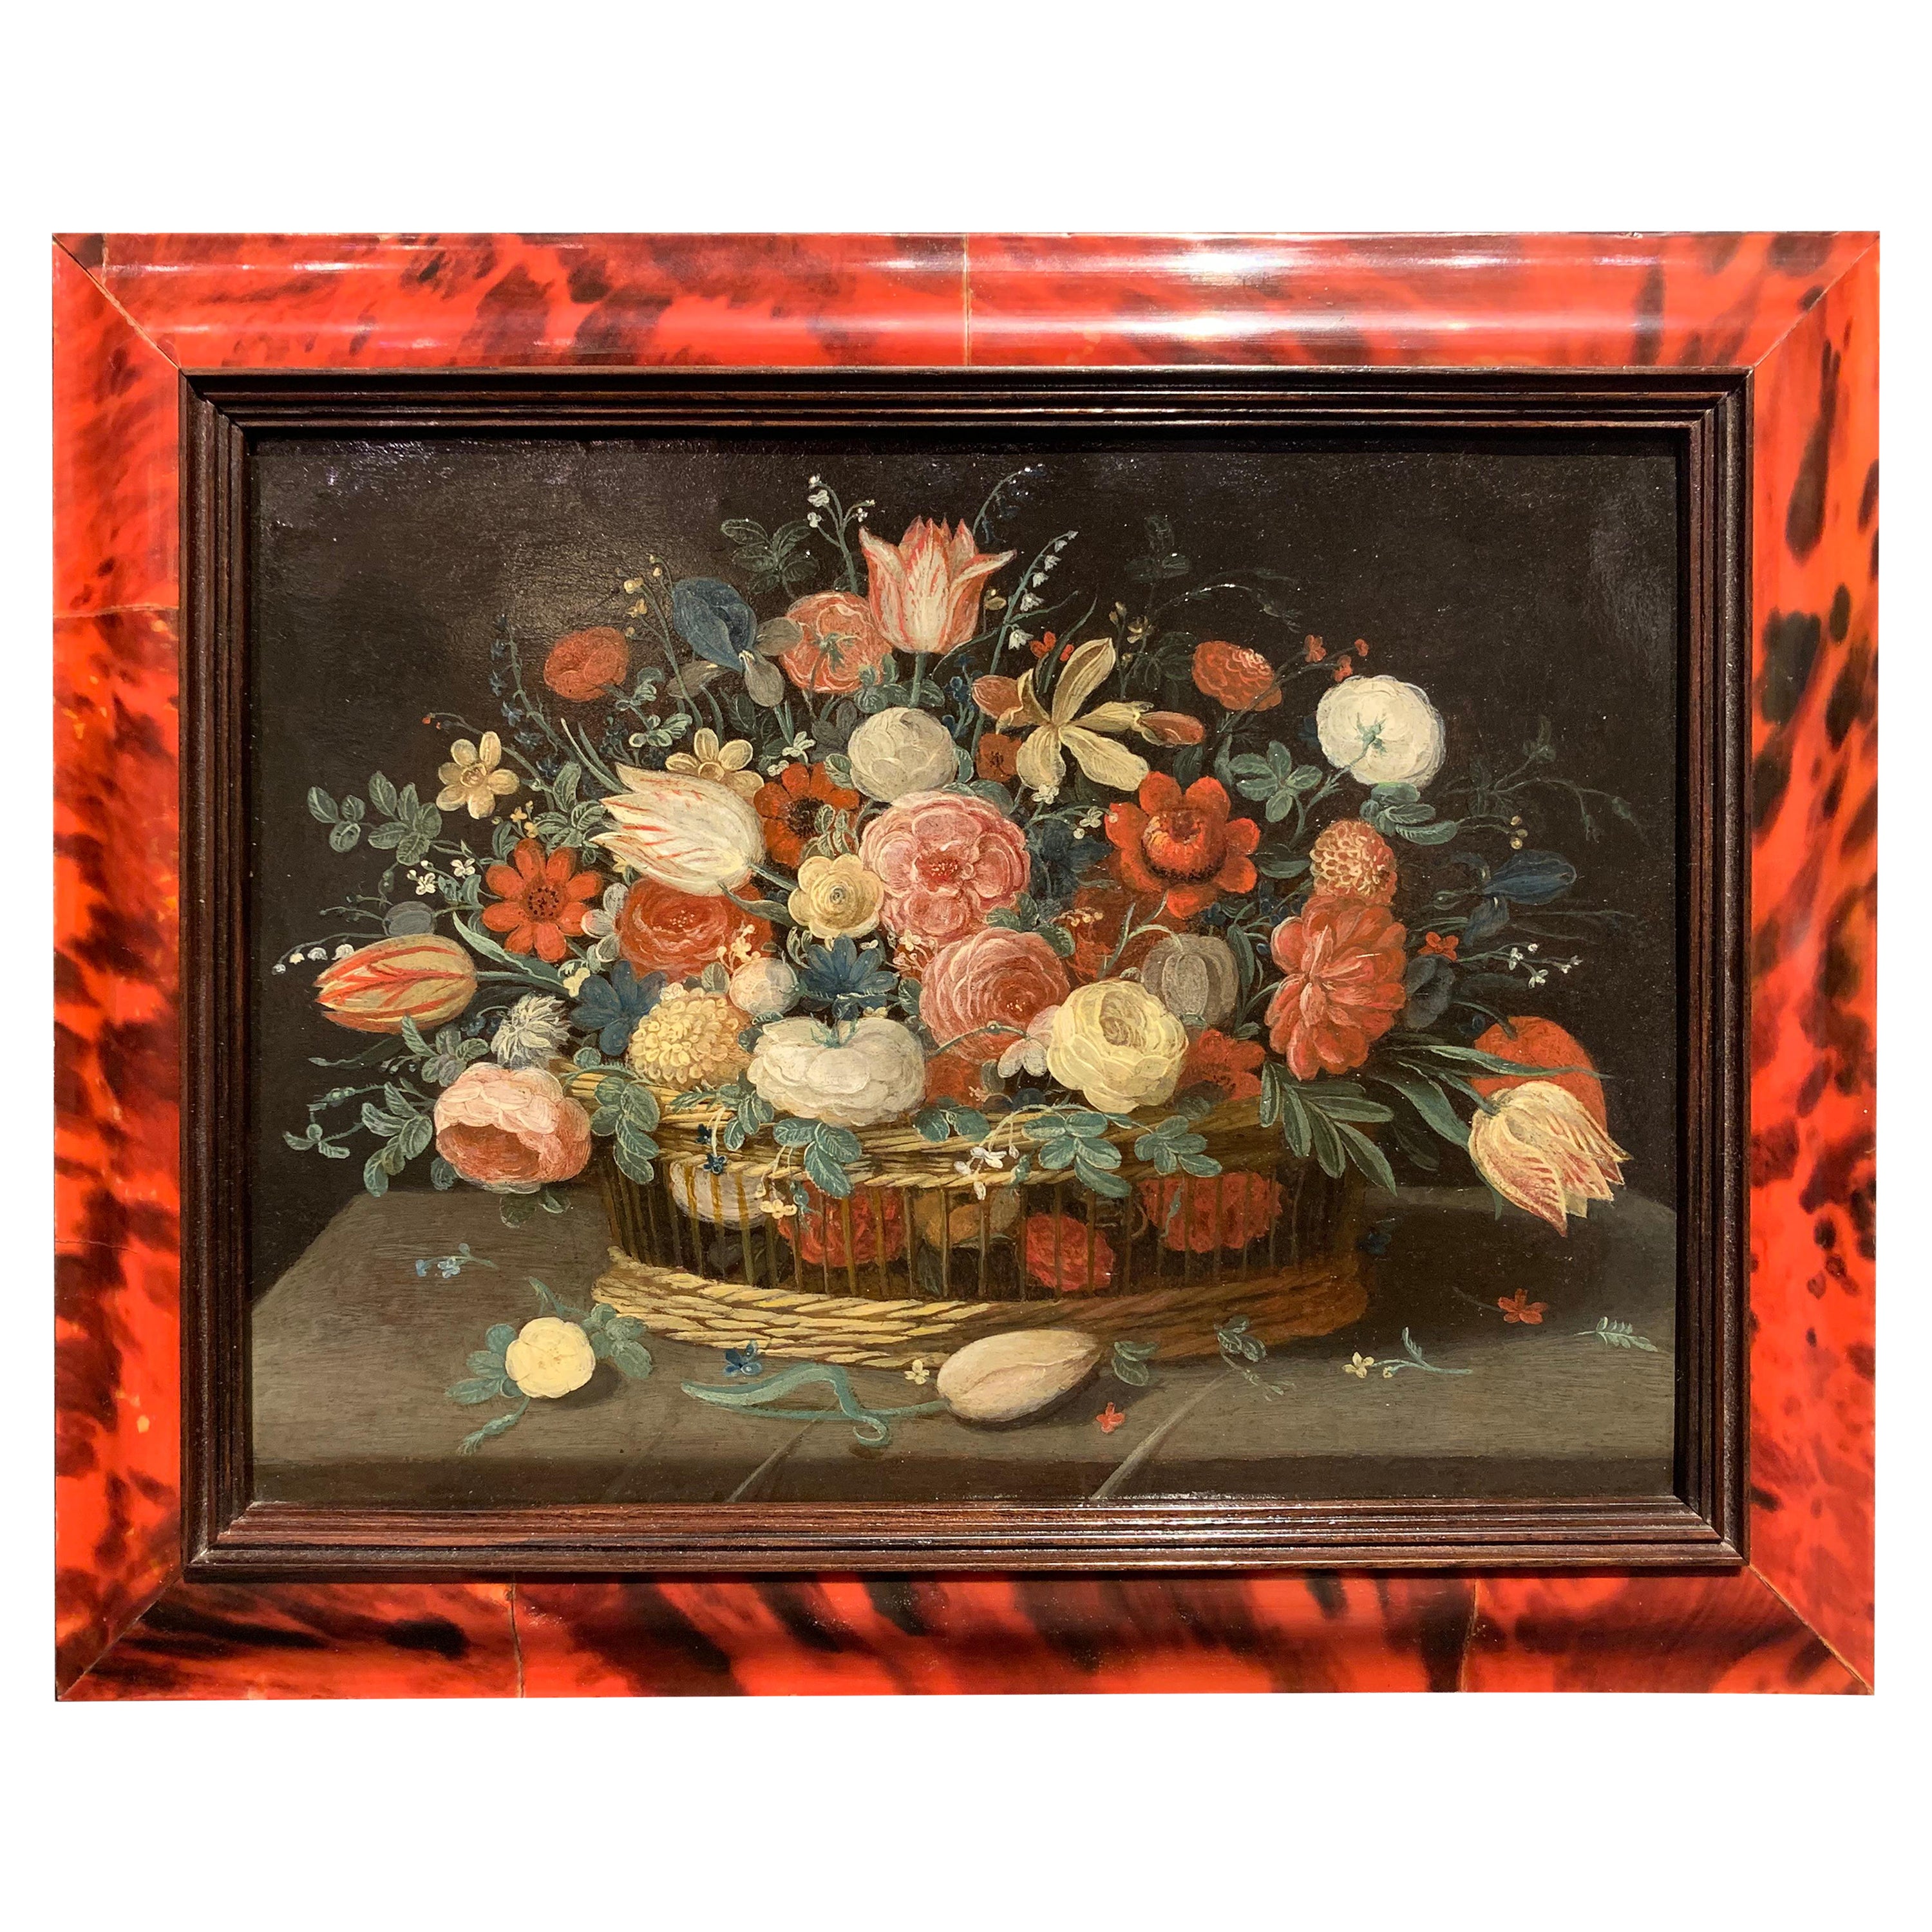 Basket of flowers - Jan Van KESSEL the Younger (1654-1708)